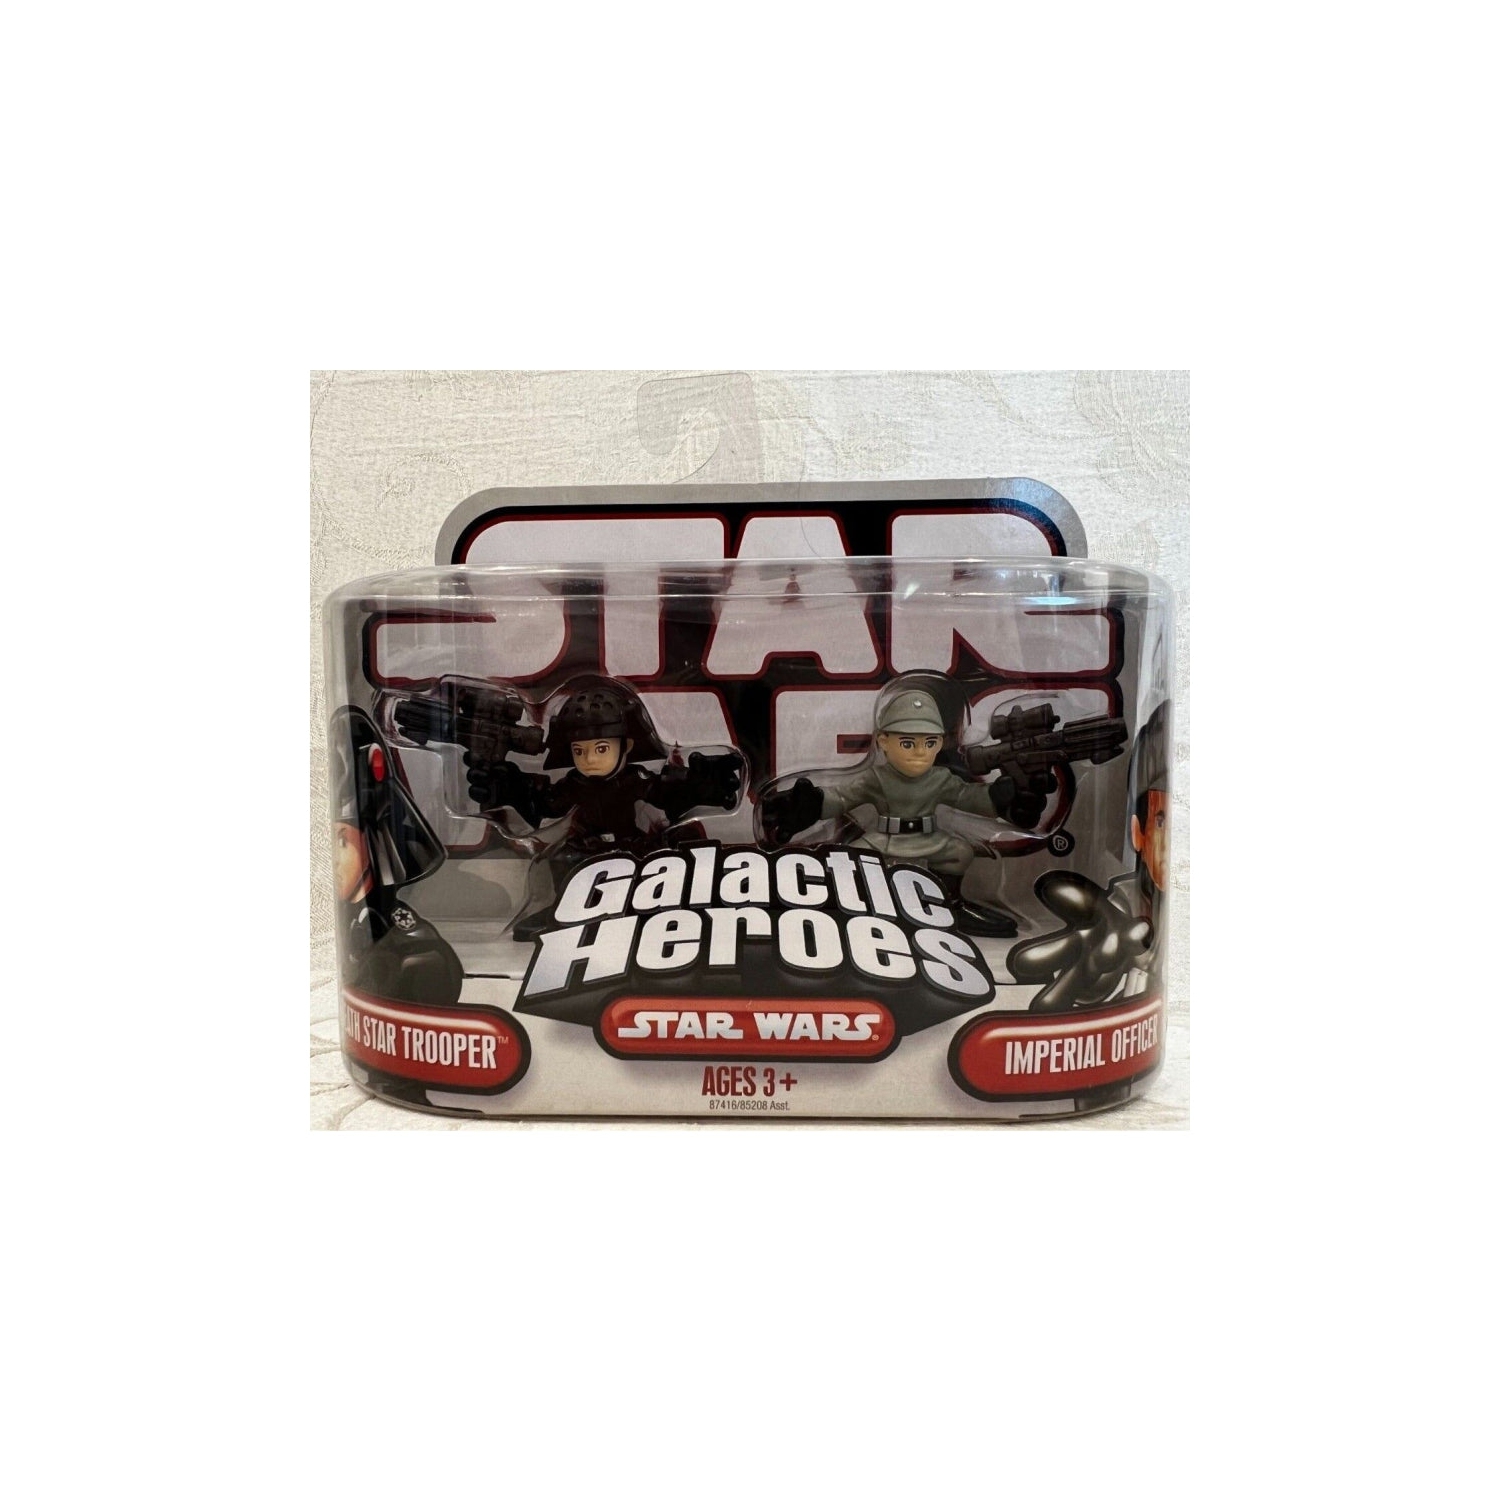 Star Wars Galactic Heroes Death Star Trooper & Imperial Officer Figure Set